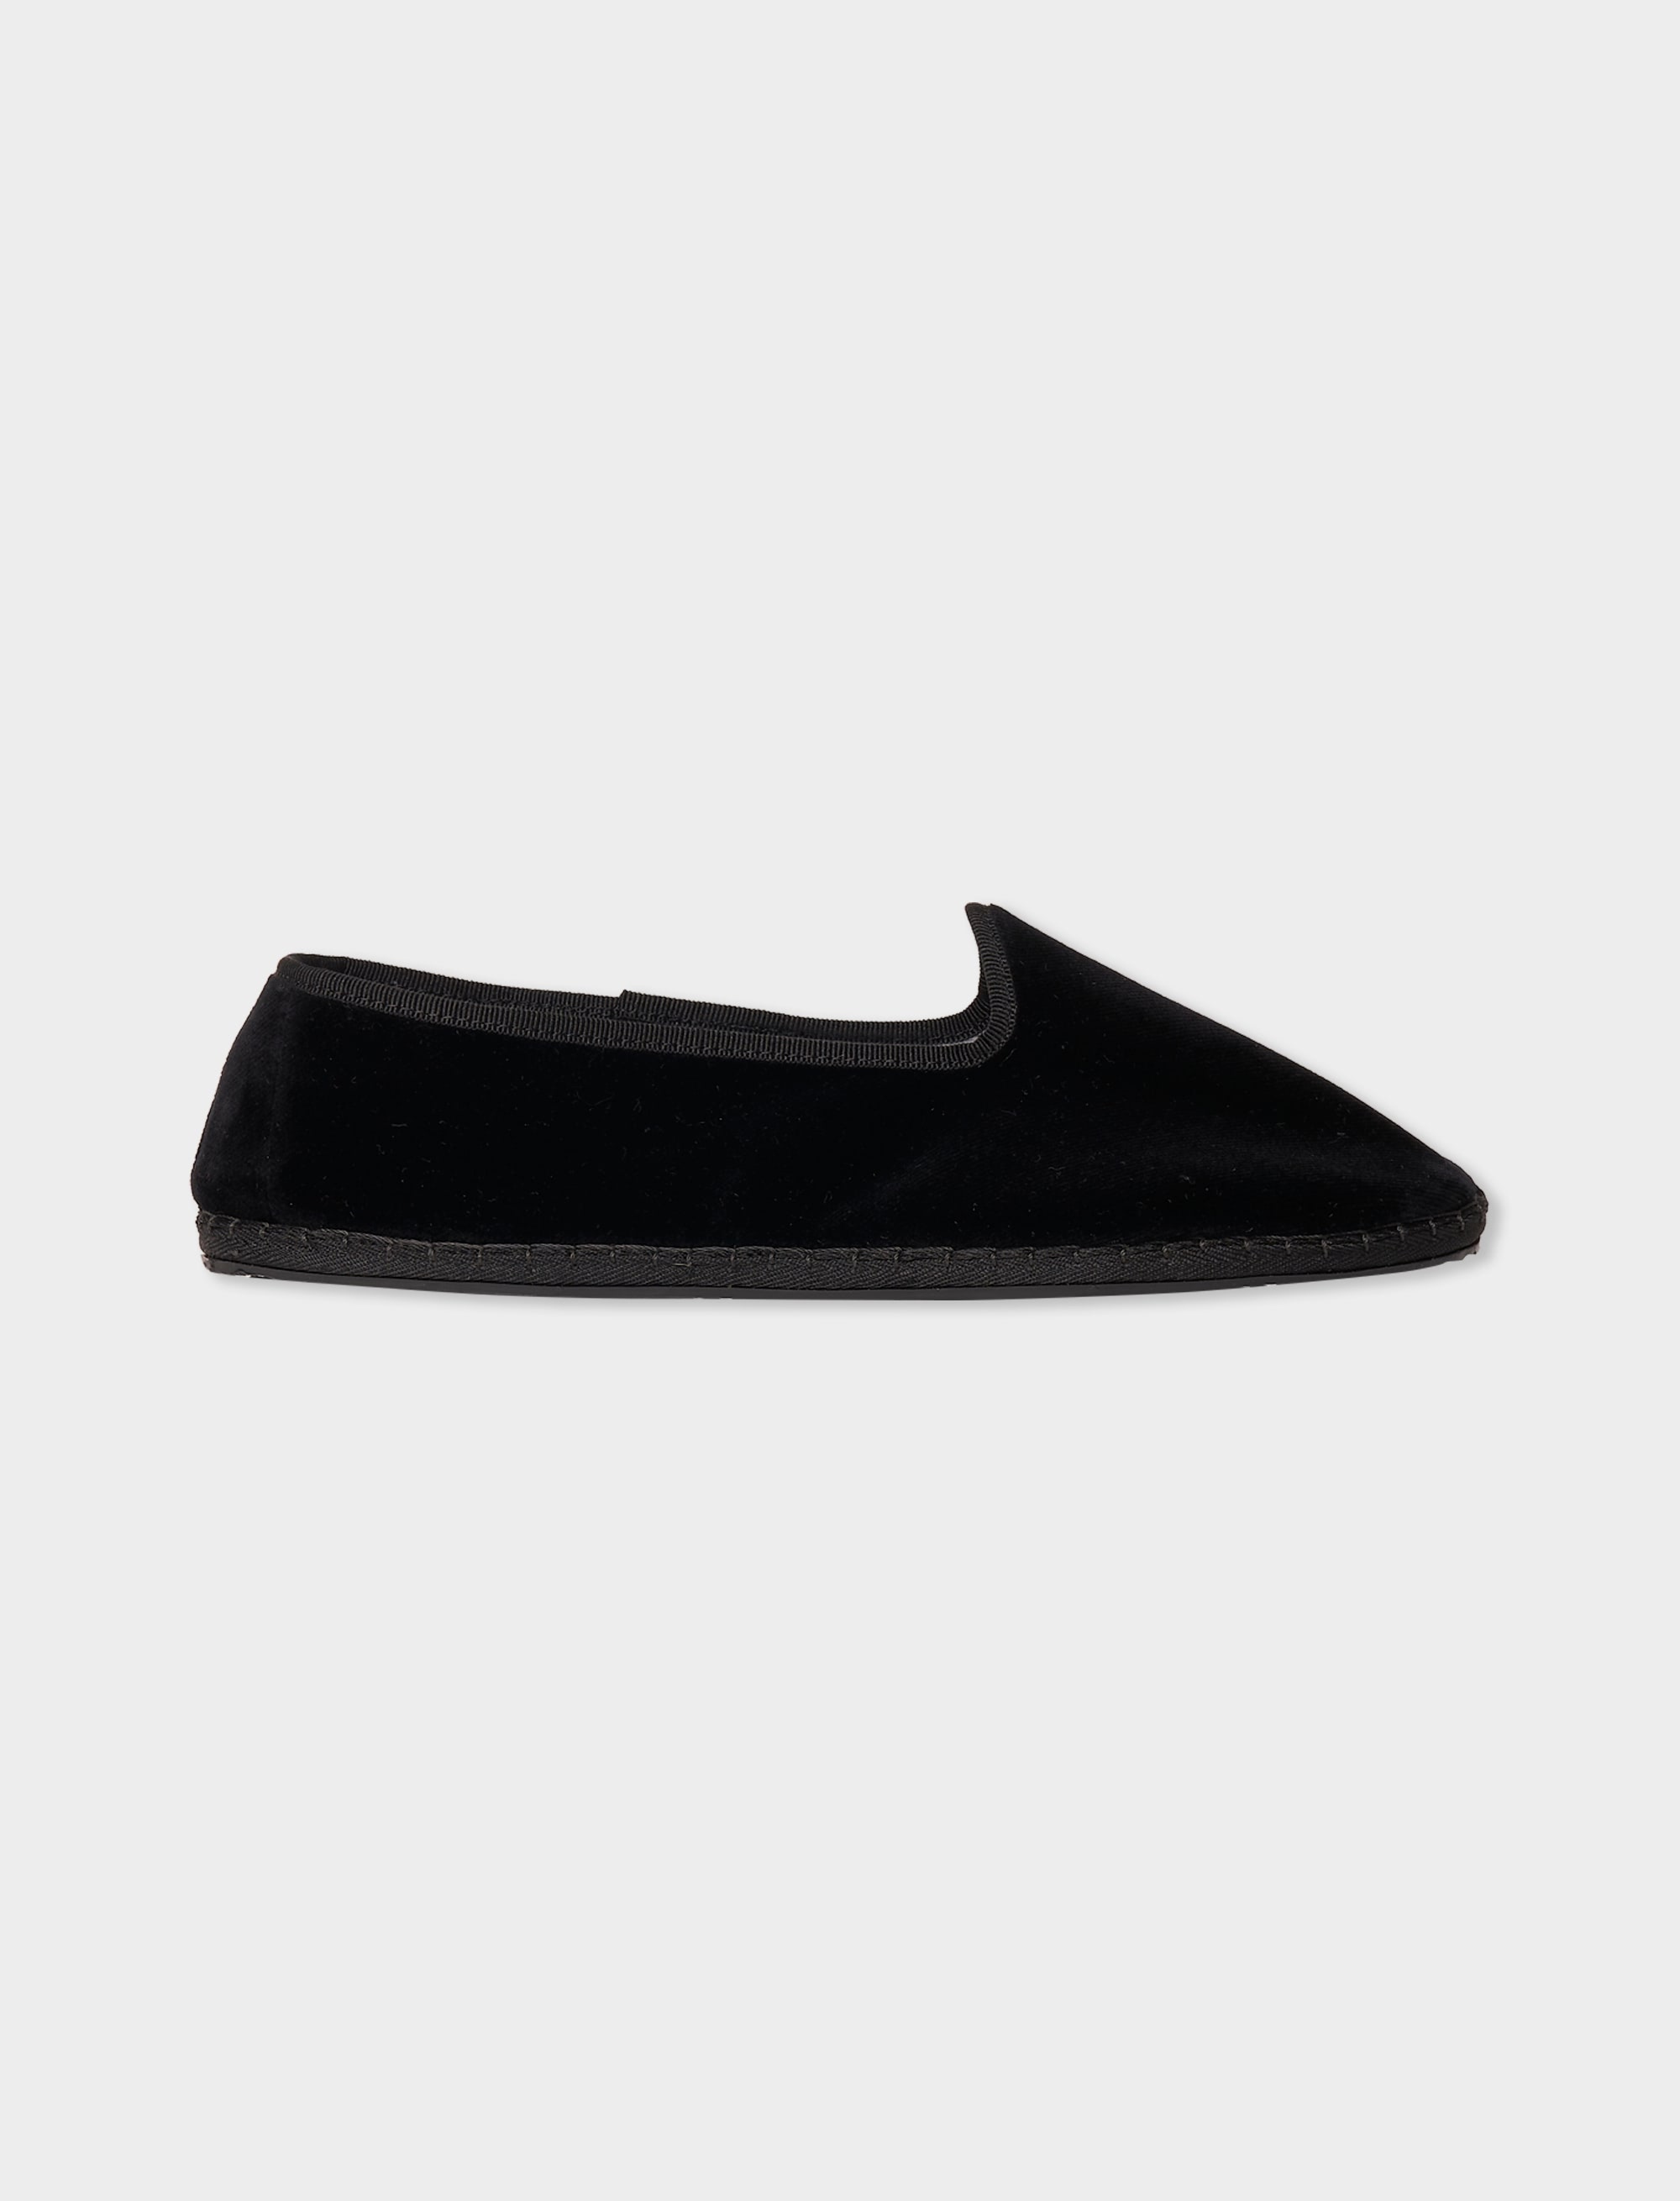 Men's plain black velvet shoes | Gallo